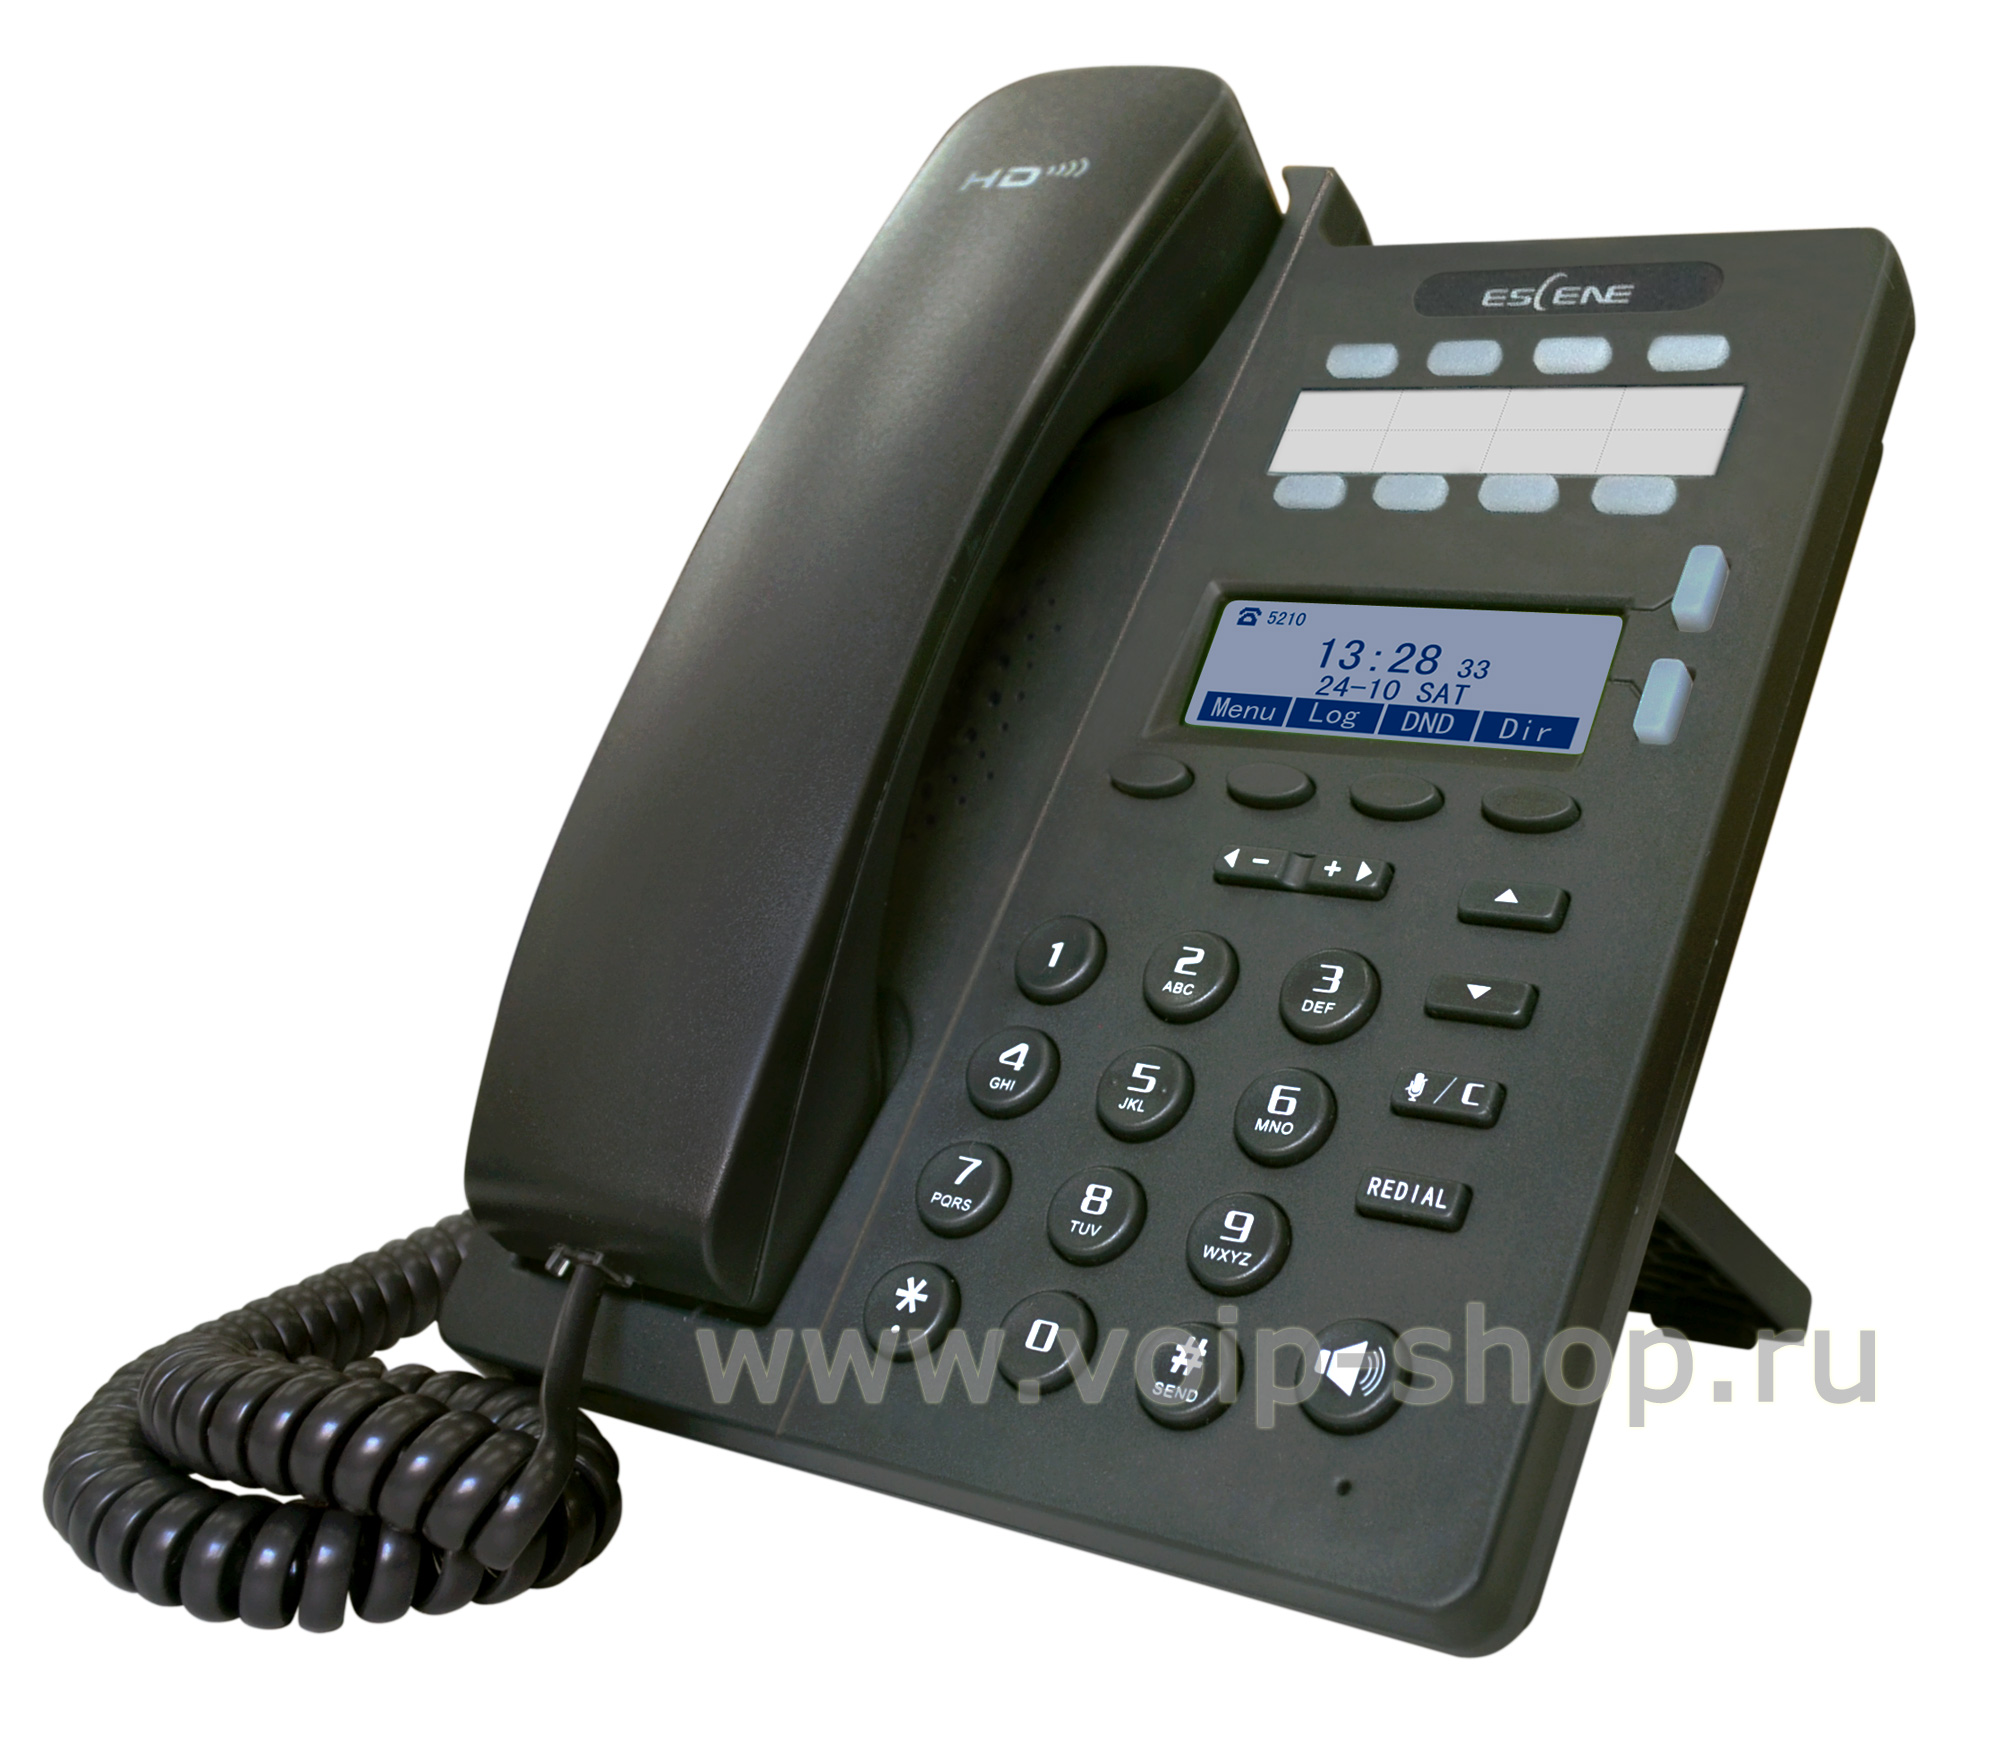 Топ проводных телефонов. IP-телефон QTECH QVP-100p. VOIP-телефон Escene es205-n. IP телефон Escene es206-n. VOIP-телефон QTECH QVP-100.